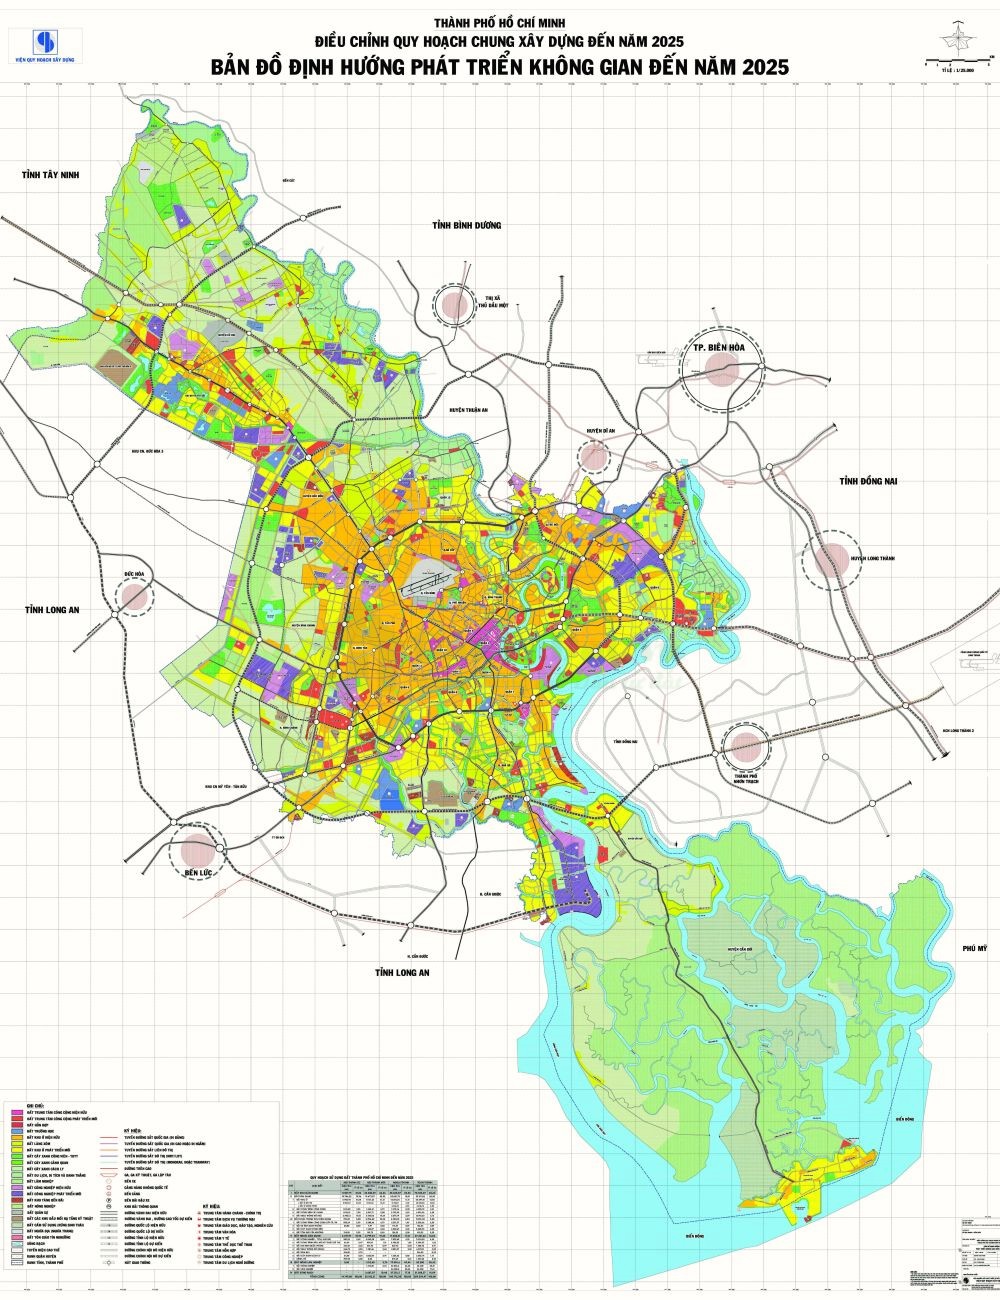 Bản đồ chi tiết TP HCM: Bằng cách sử dụng công nghệ tiên tiến, các bản đồ chi tiết về TP HCM được cập nhật liên tục và giúp người dân dễ dàng tìm kiếm và di chuyển trong thành phố.